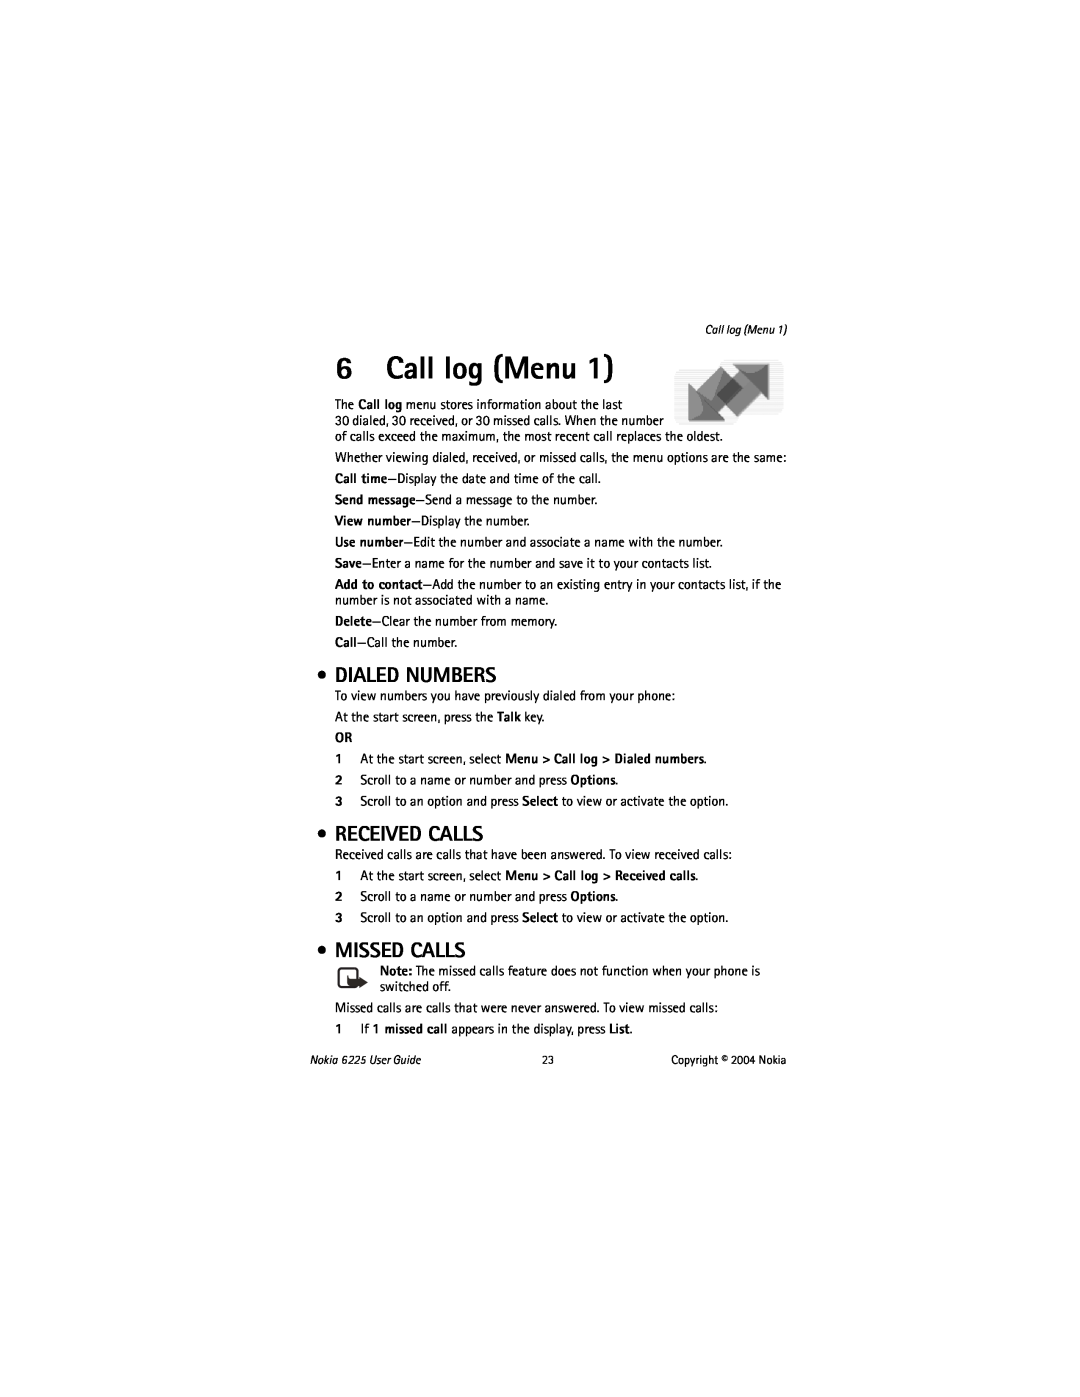 Nokia 6225 manual Call log Menu, Dialed Numbers, Received Calls, Missed Calls 